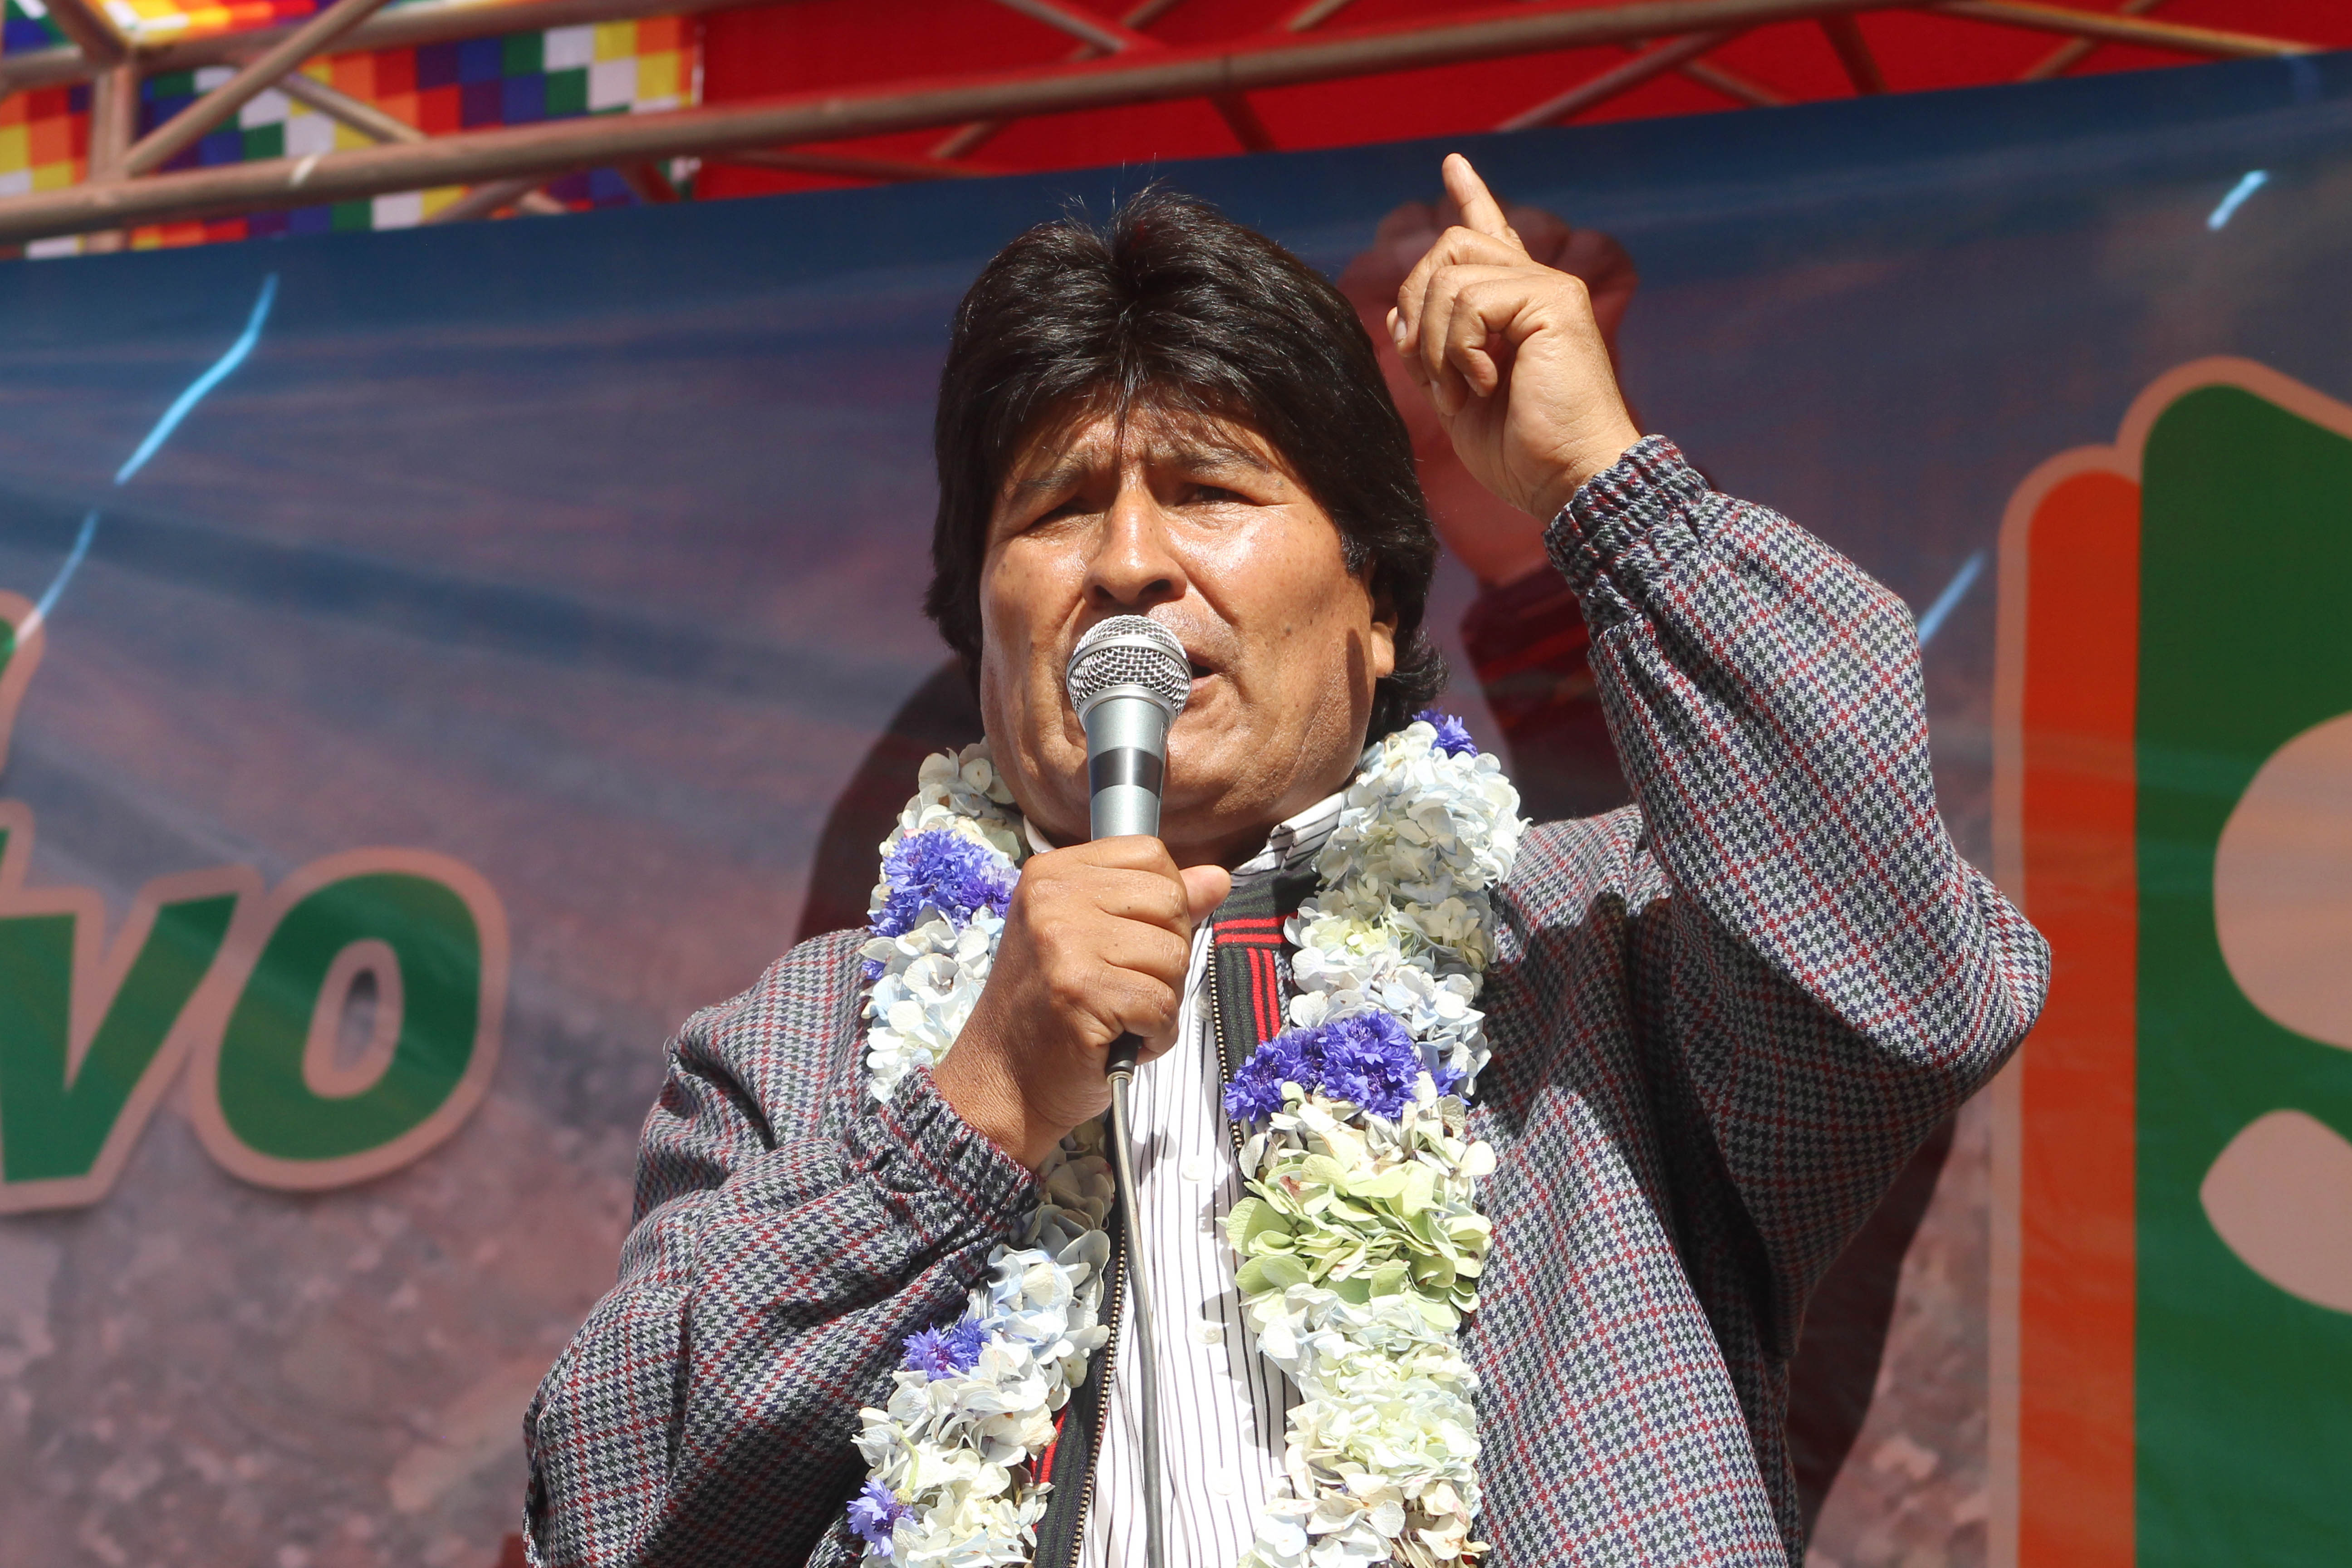 El 21 de febrero los bolivianos decidirán si aceptan la modificación parcial de la Carta Magna para permitir la repostulación de los actuales mandatarios a los comicios de 2019.